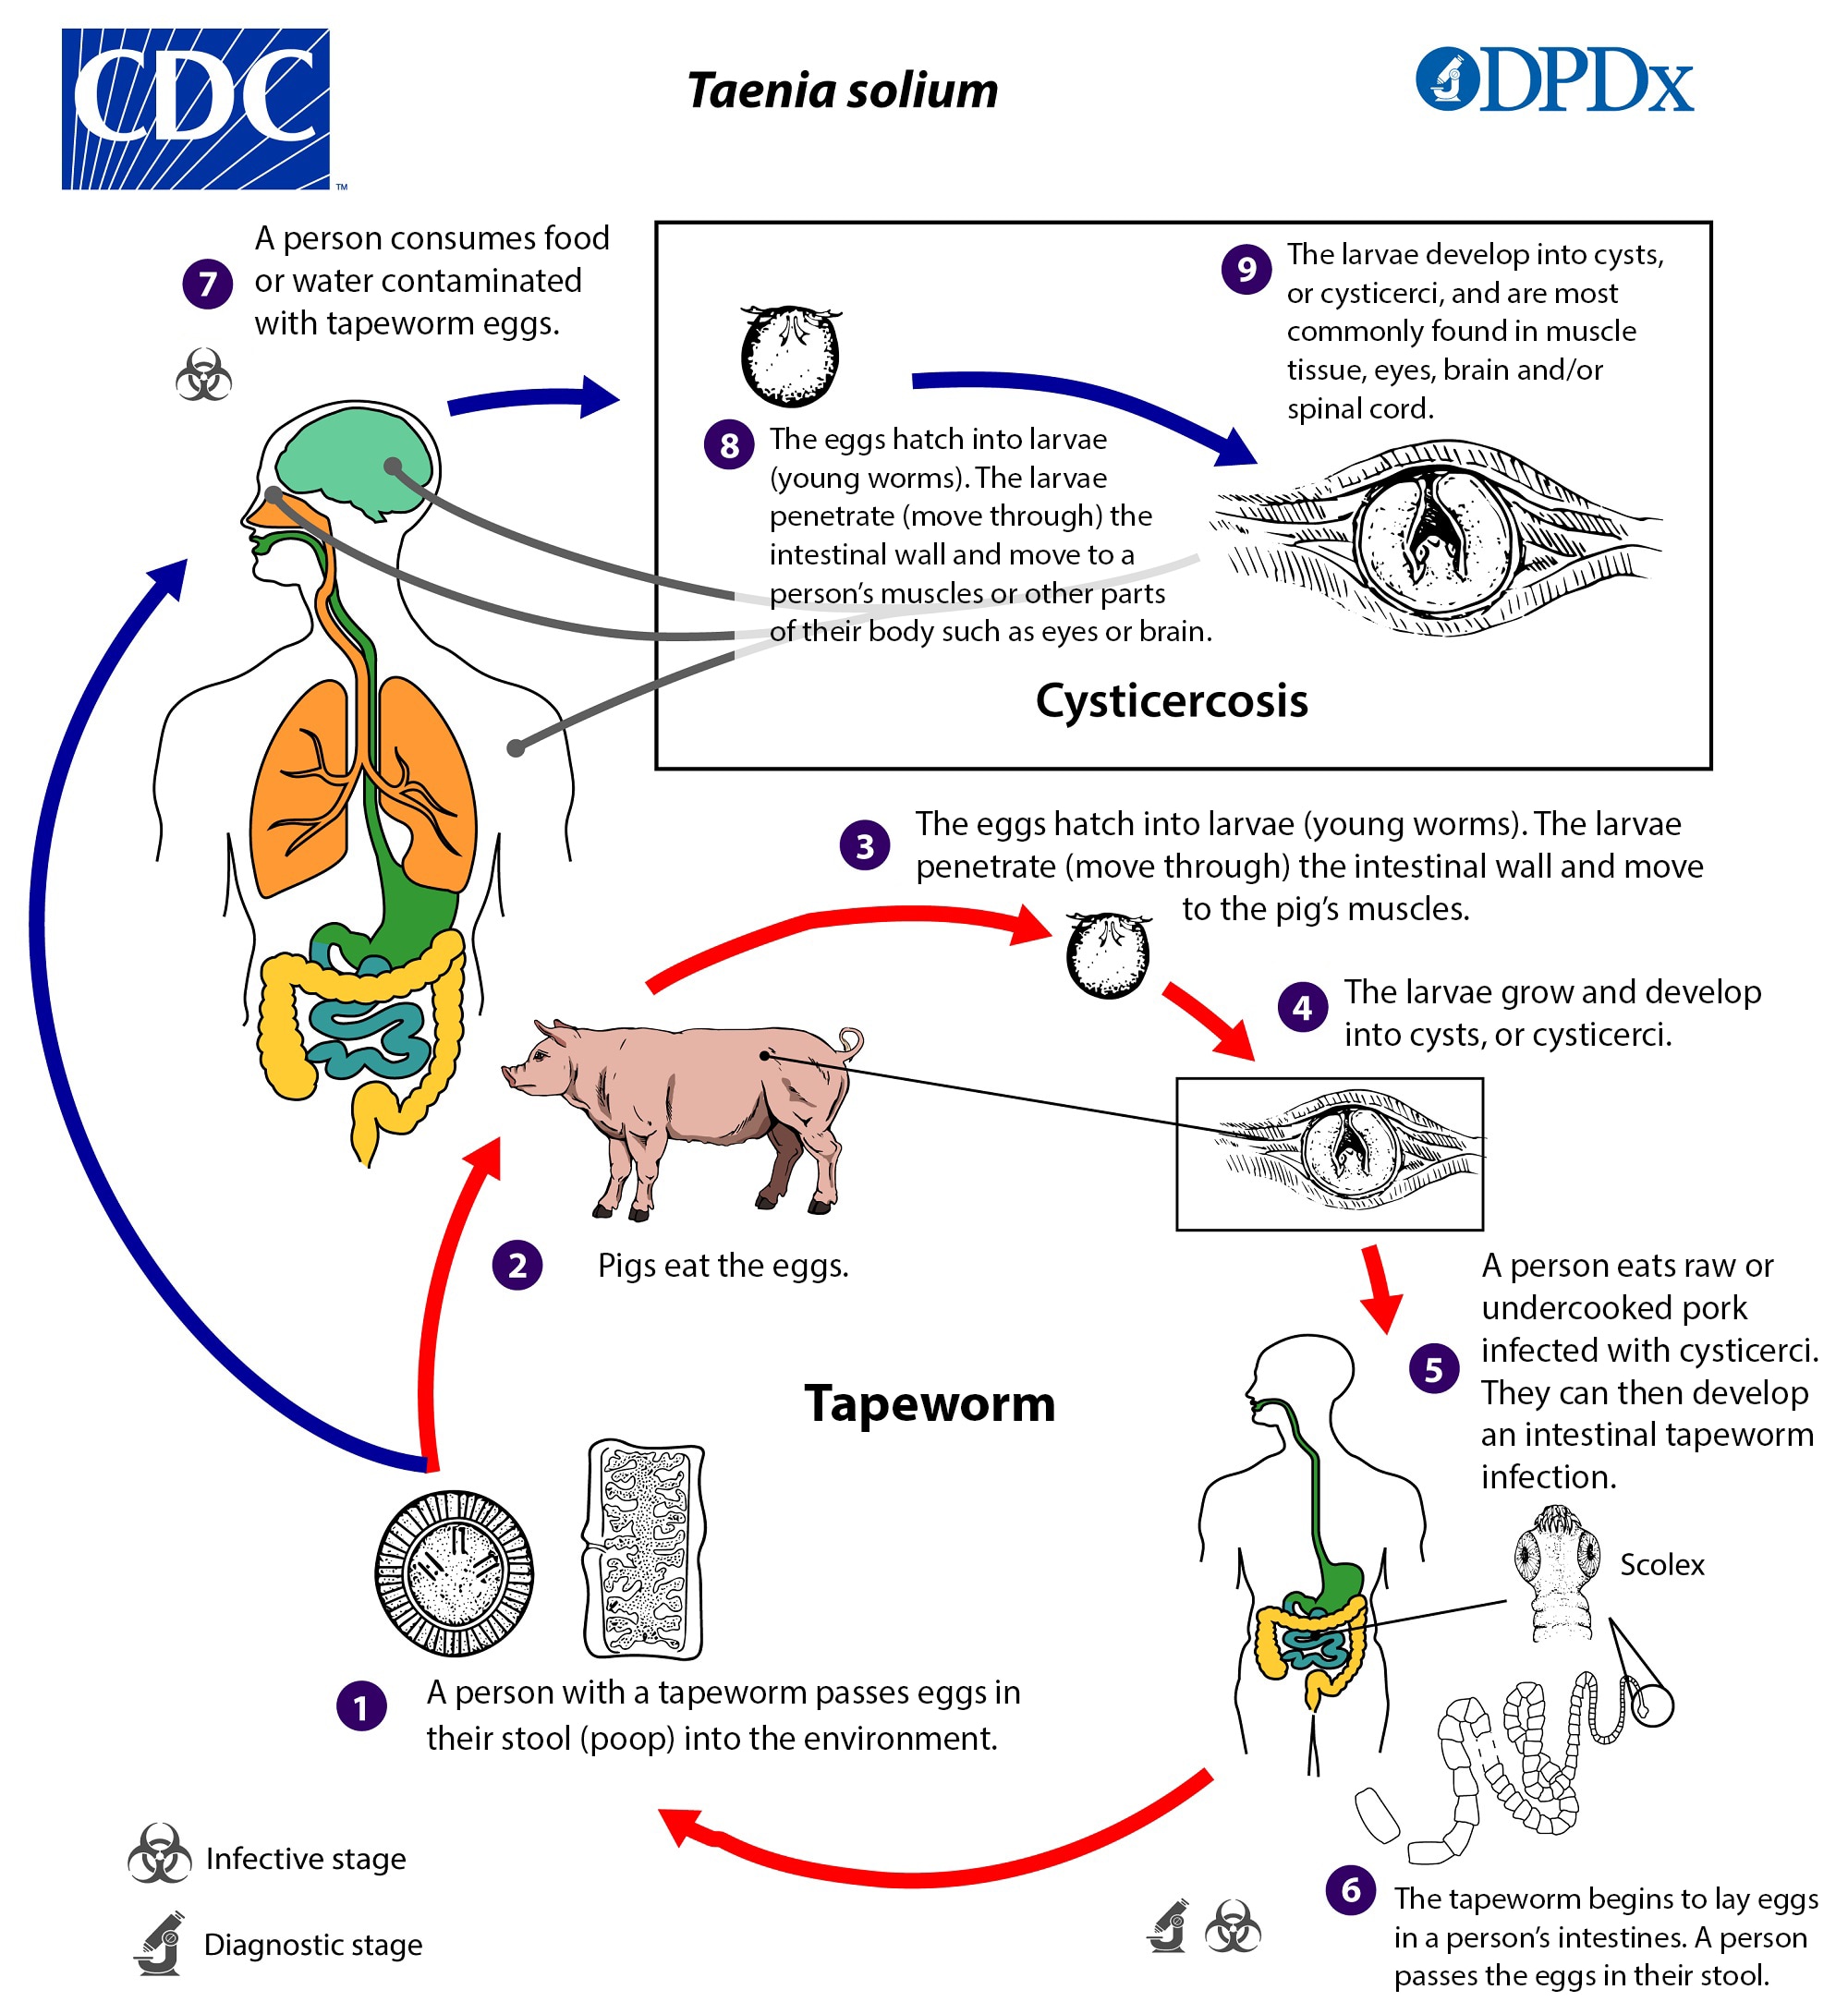 Life cycle states of Taenia solium parasite.